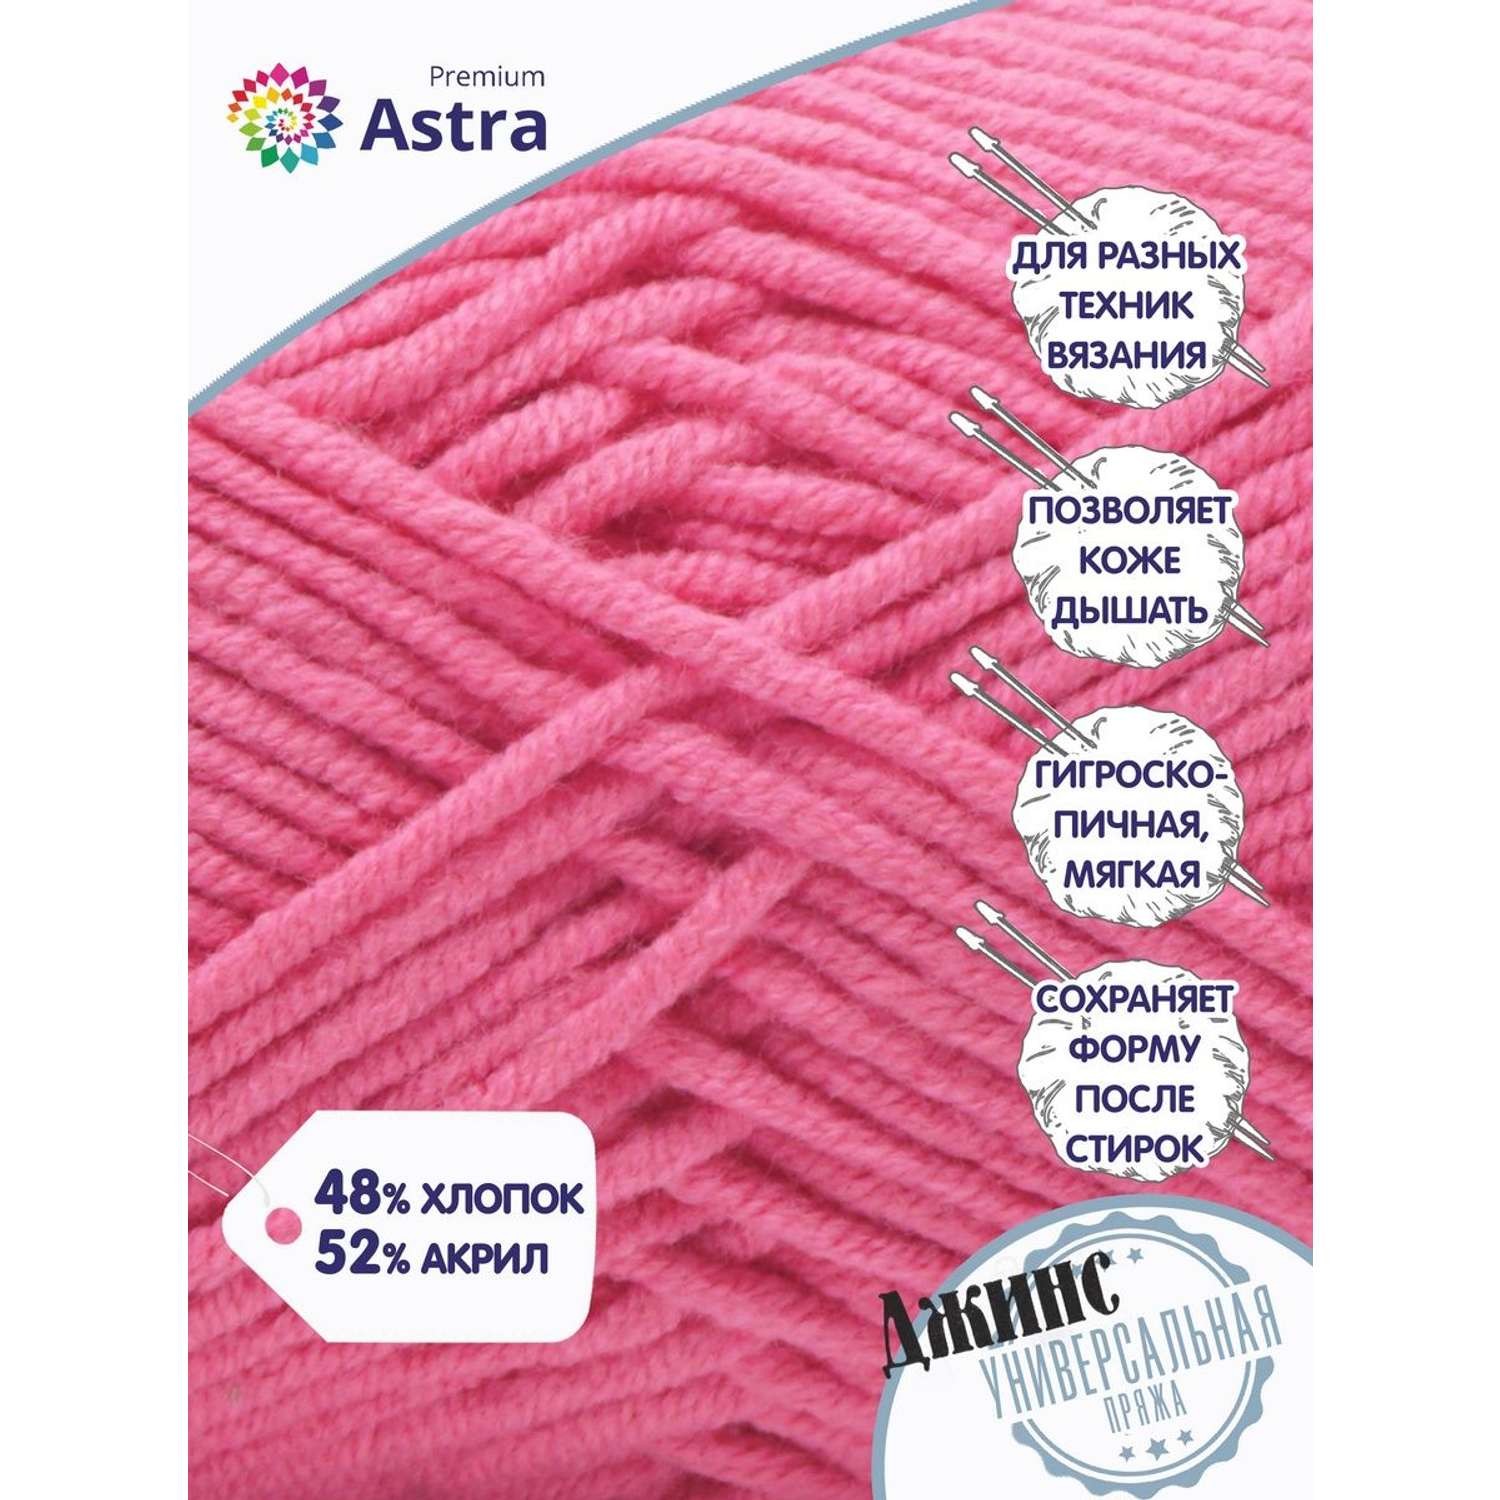 Пряжа для вязания Astra Premium джинс для повседневной одежды акрил хлопок 50 гр 135 м 110 розовый 4 мотка - фото 2